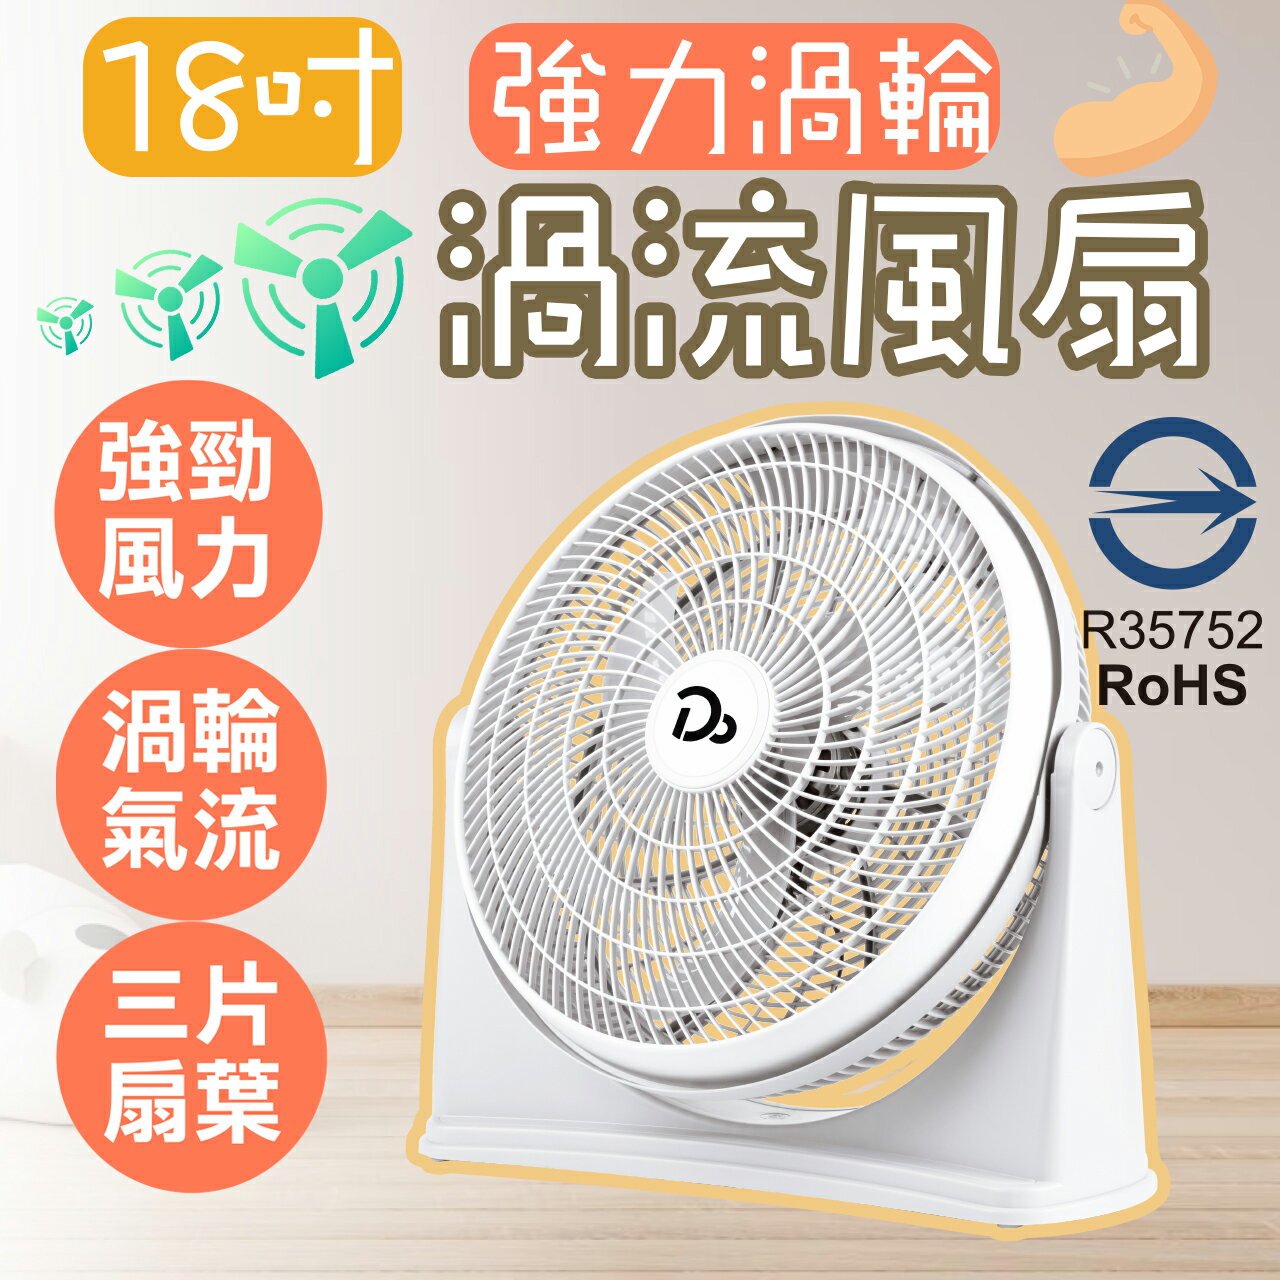 電風扇 18吋 空氣循環扇 台灣現貨保固一年 渦流循環扇 冷氣循環扇 涼風扇 座扇 風扇 電扇 桌扇 迷你